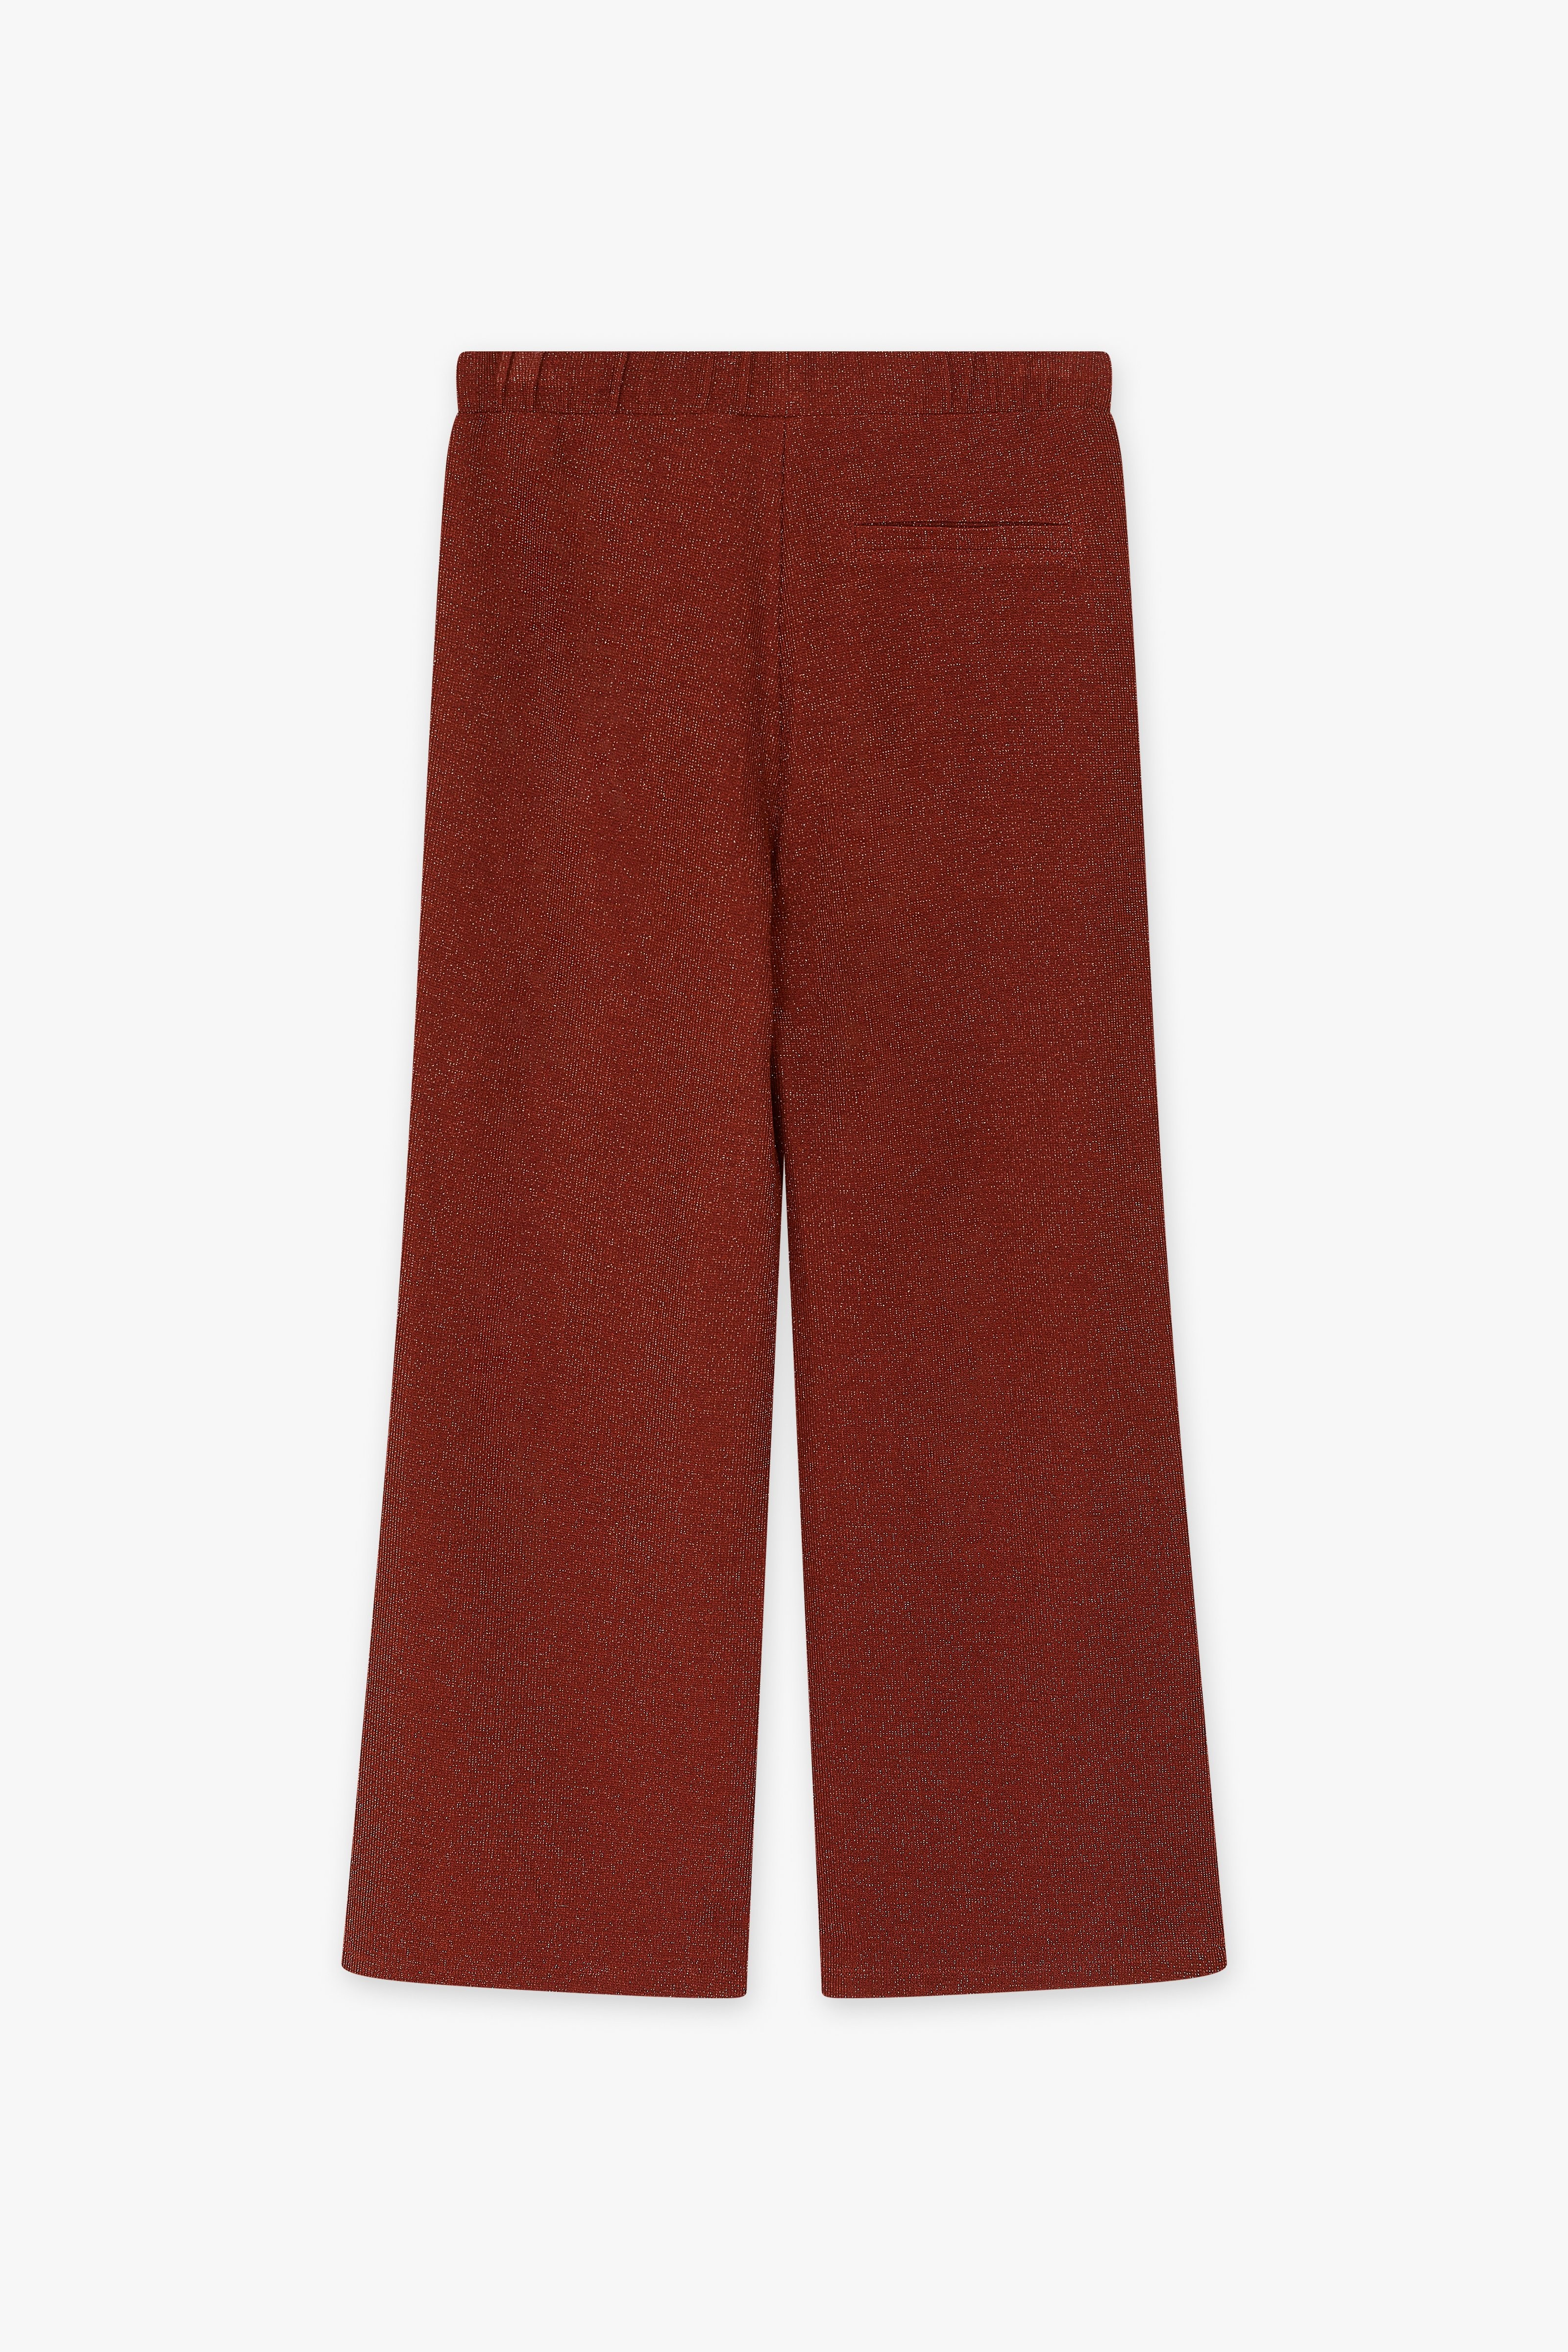 CKS Dames - THEAWIDE - long trouser - brown